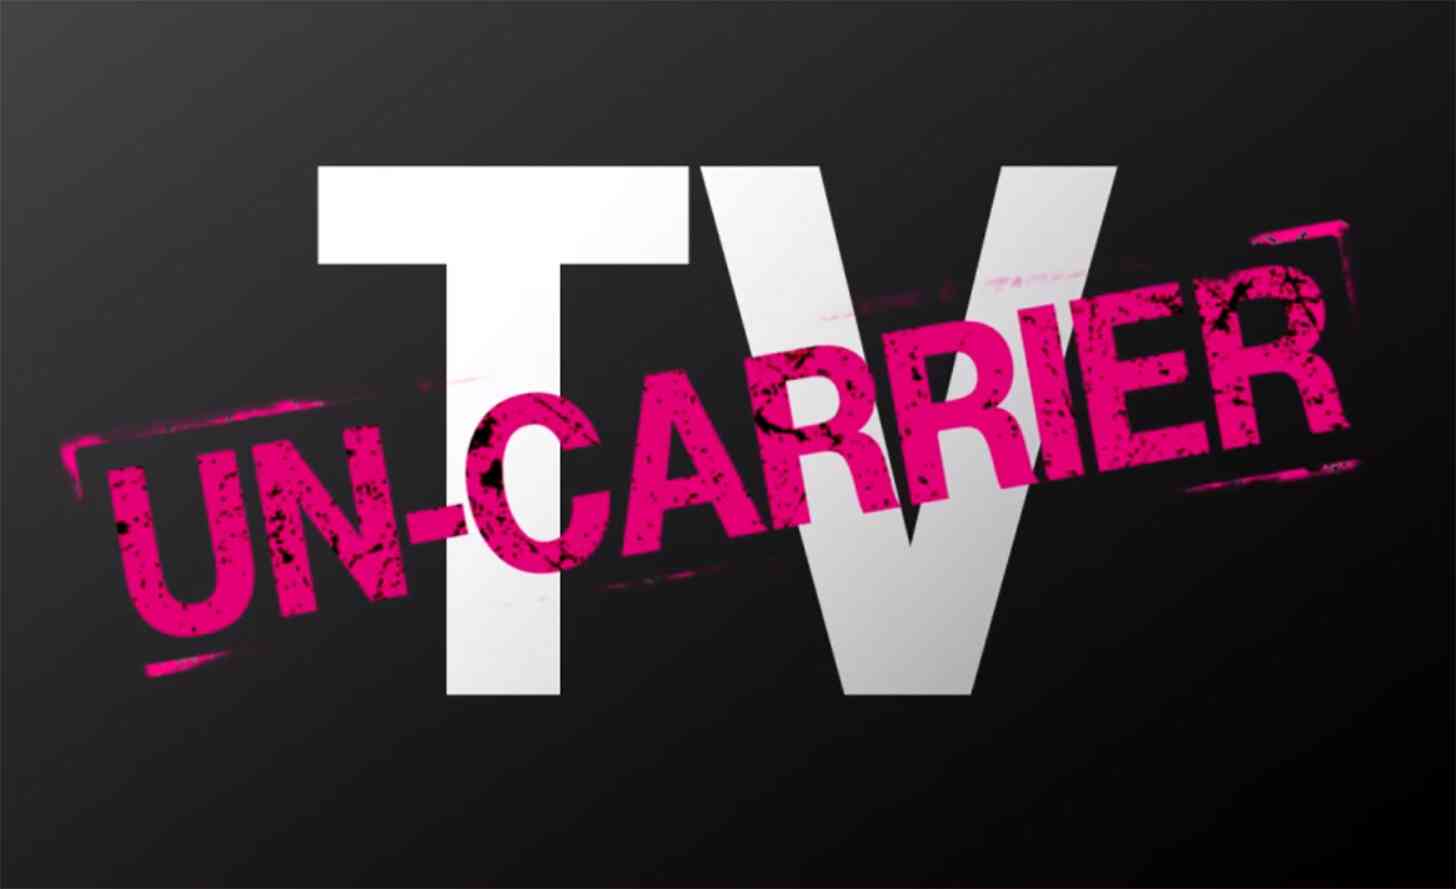 T-Mobile Un-carrier TV service